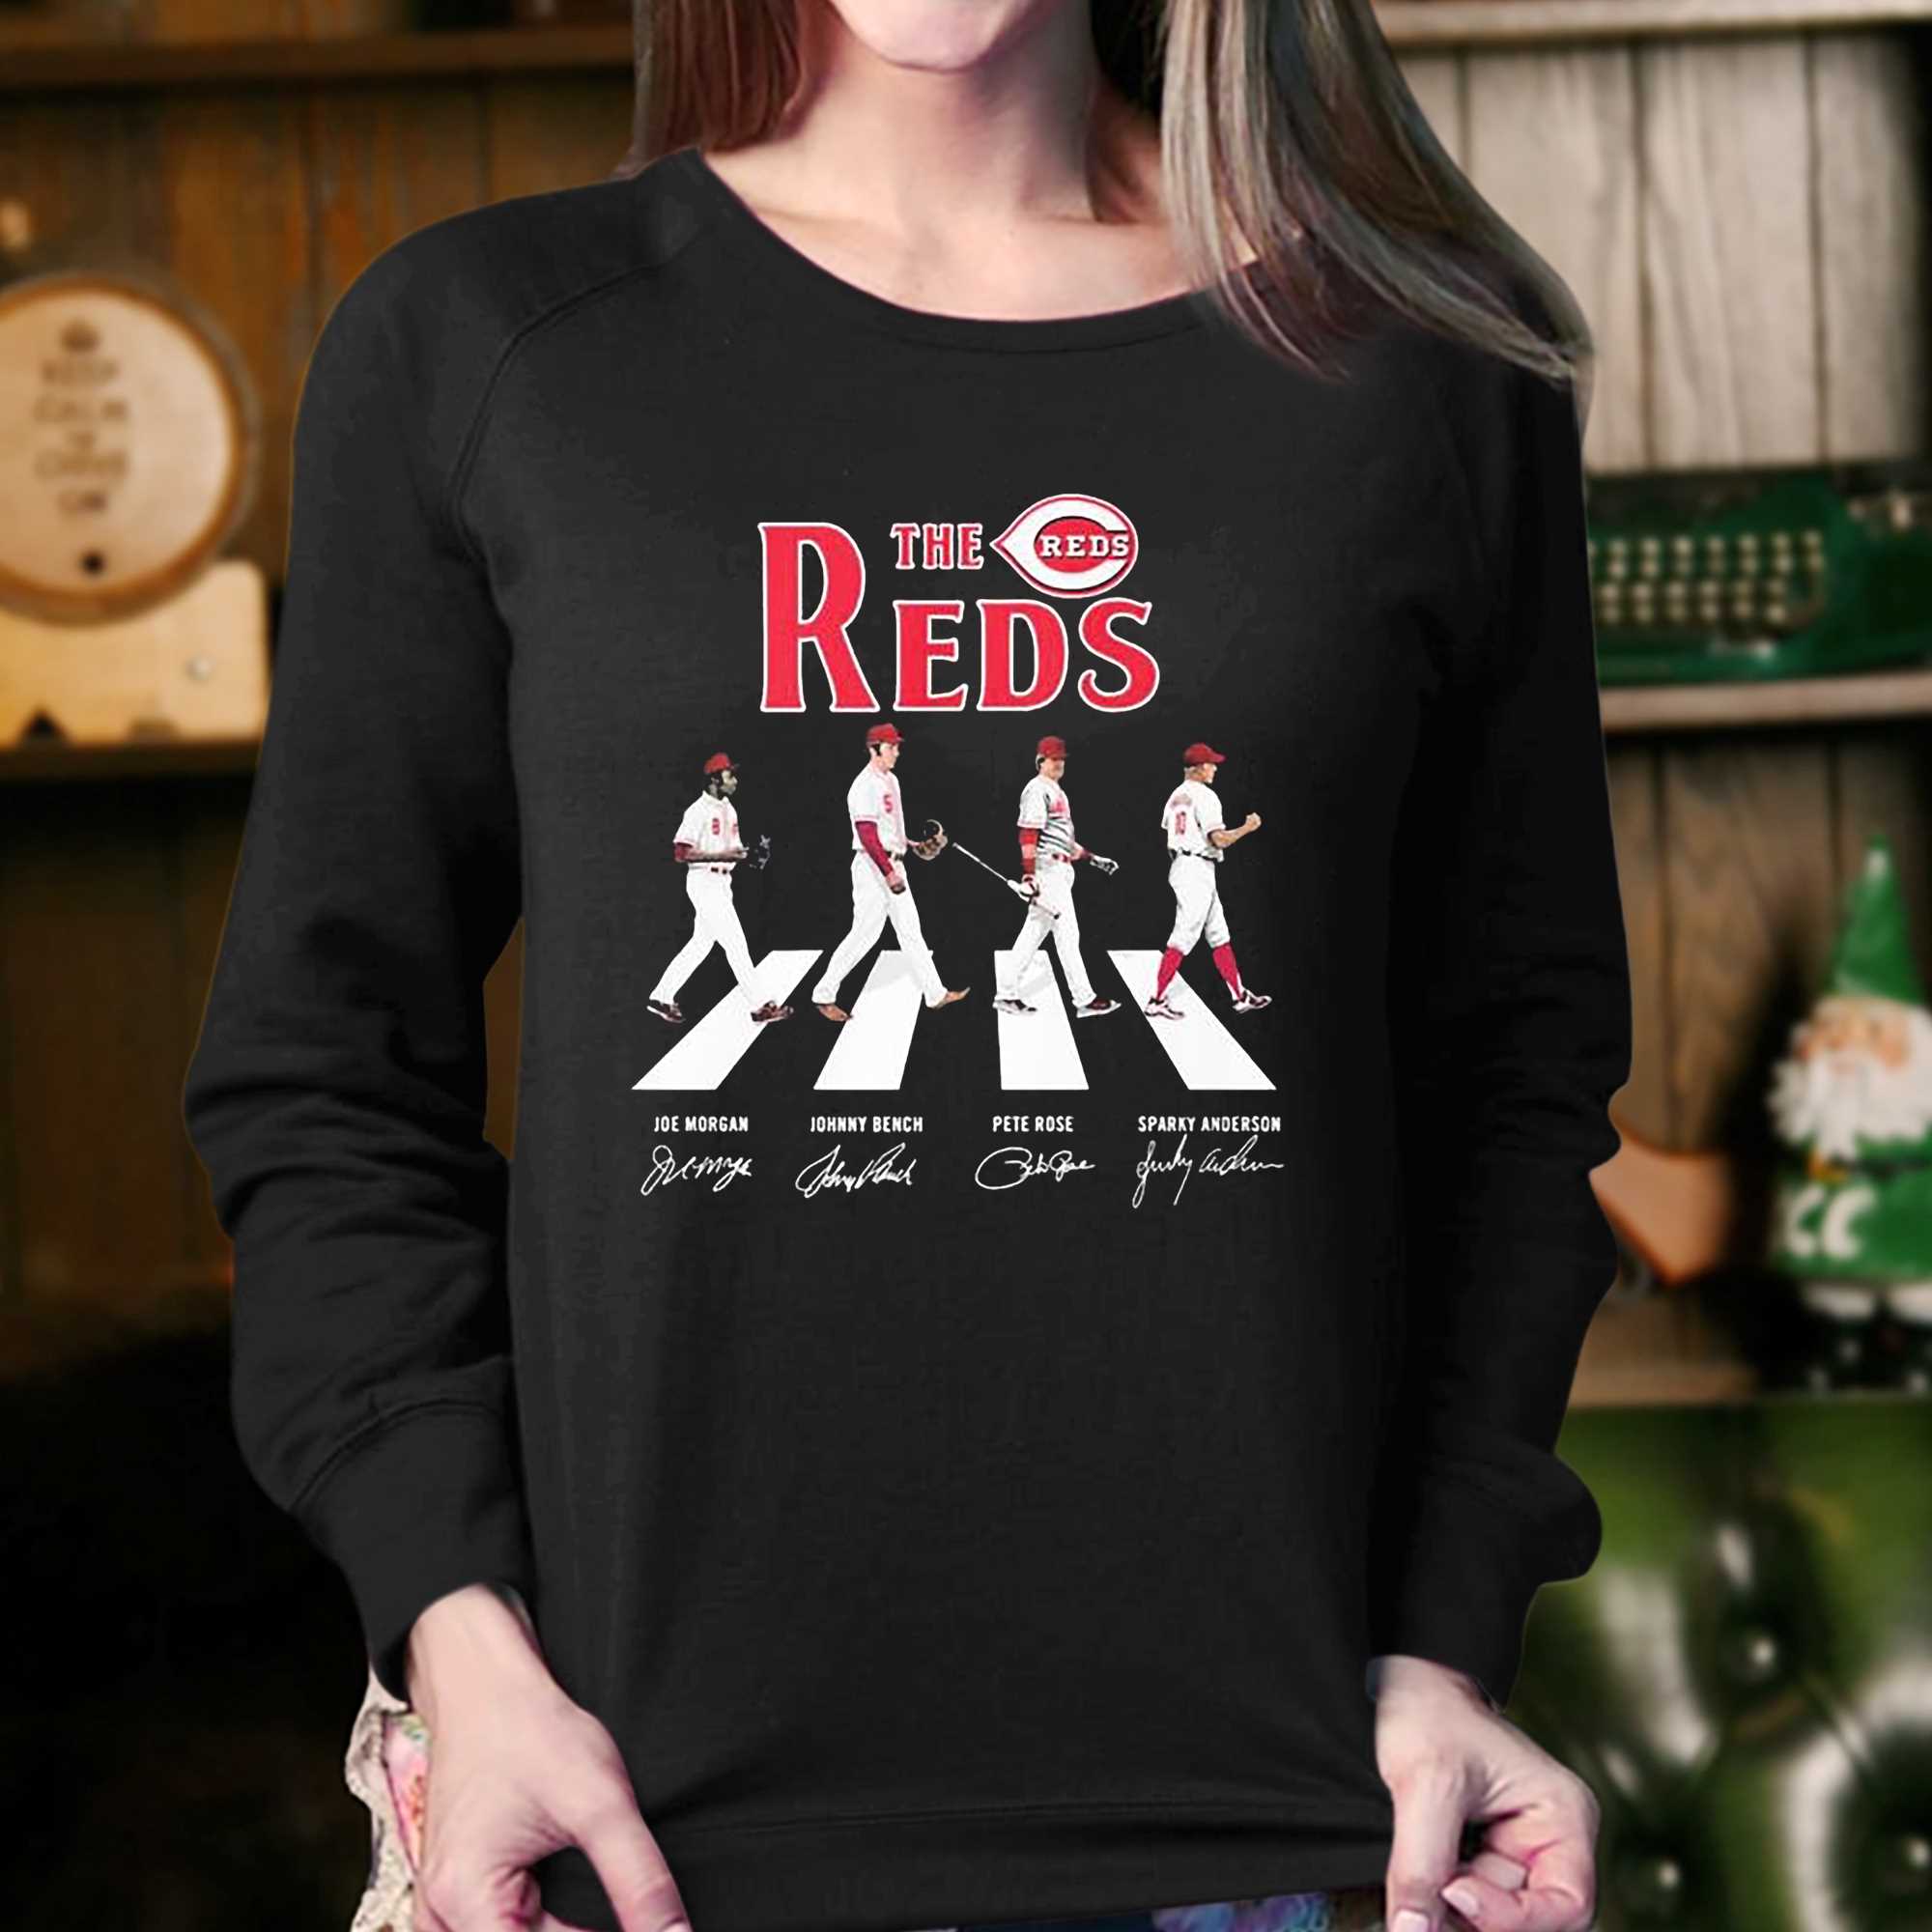 Cincinnati Reds Apparel, Reds Gear, Merchandise